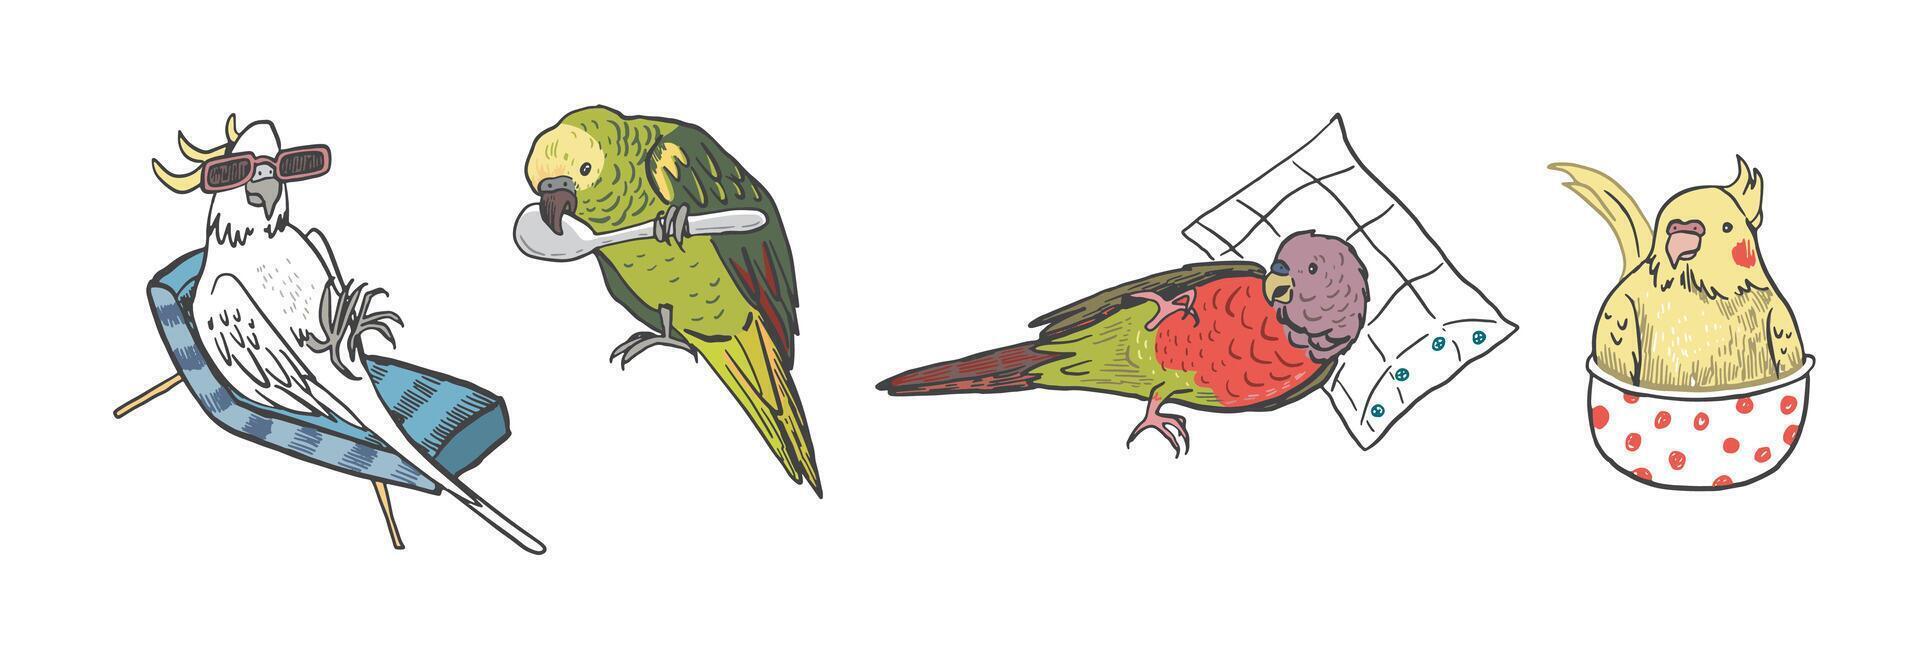 loros aves mascotas vector ilustraciones colocar.